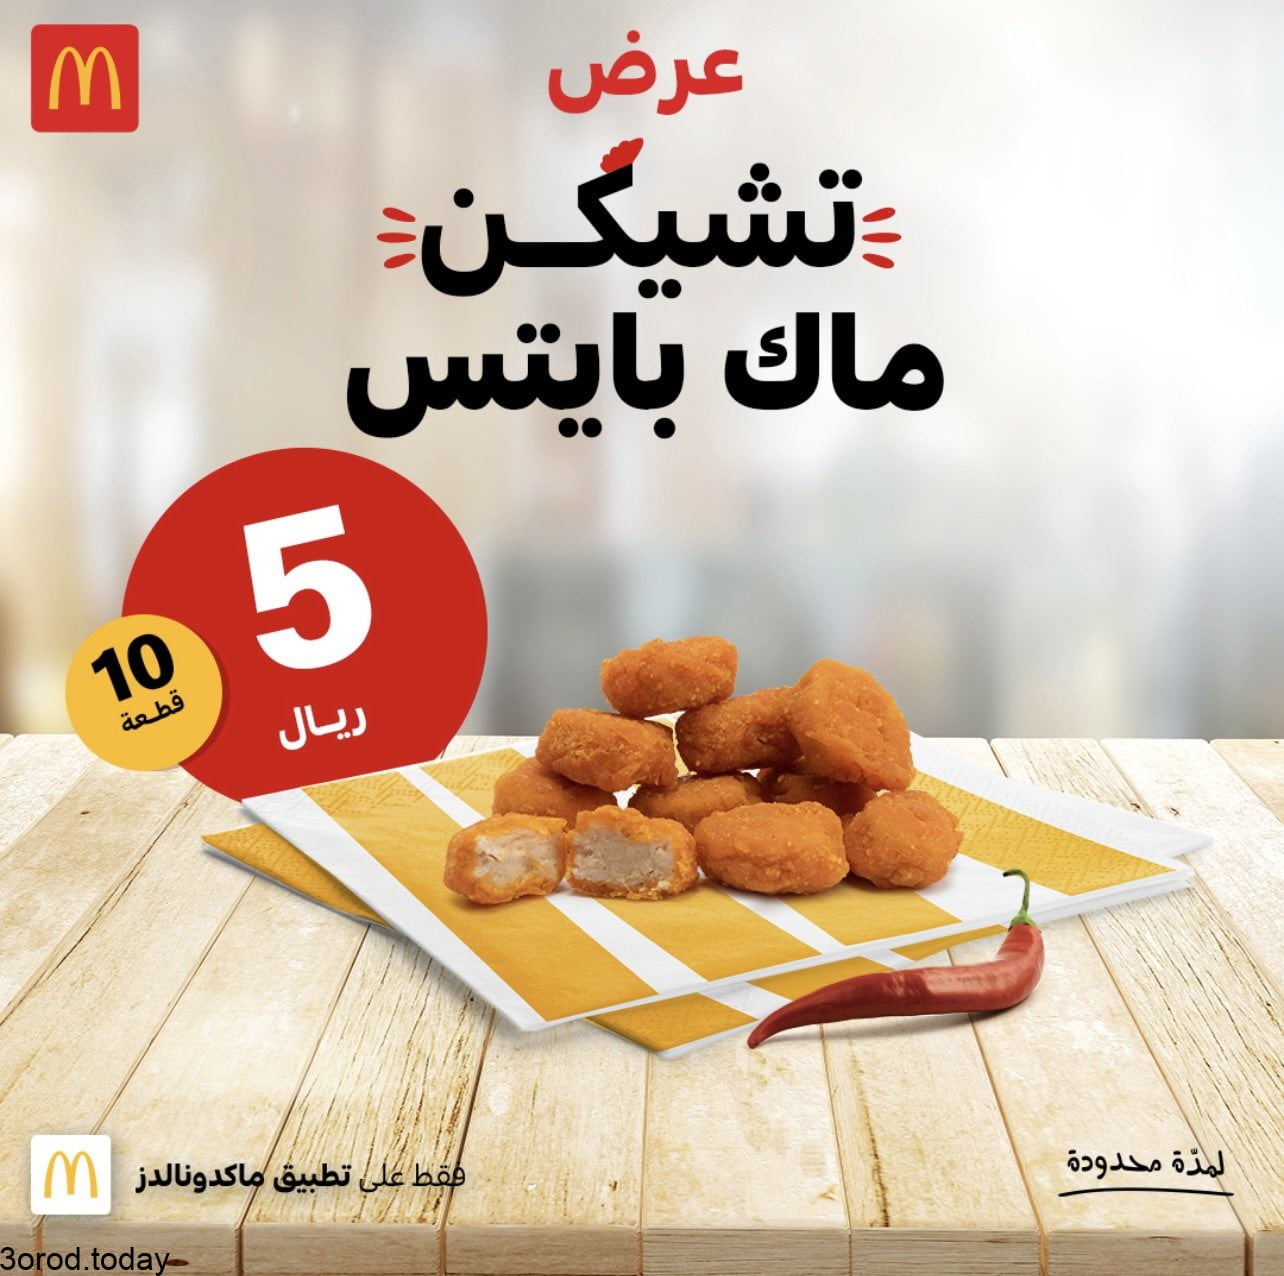 FAhFL3CXMAI7Vd1 - عروض المطاعم : عروض ماكدونالدز السعودية الغربية و الجنوبية